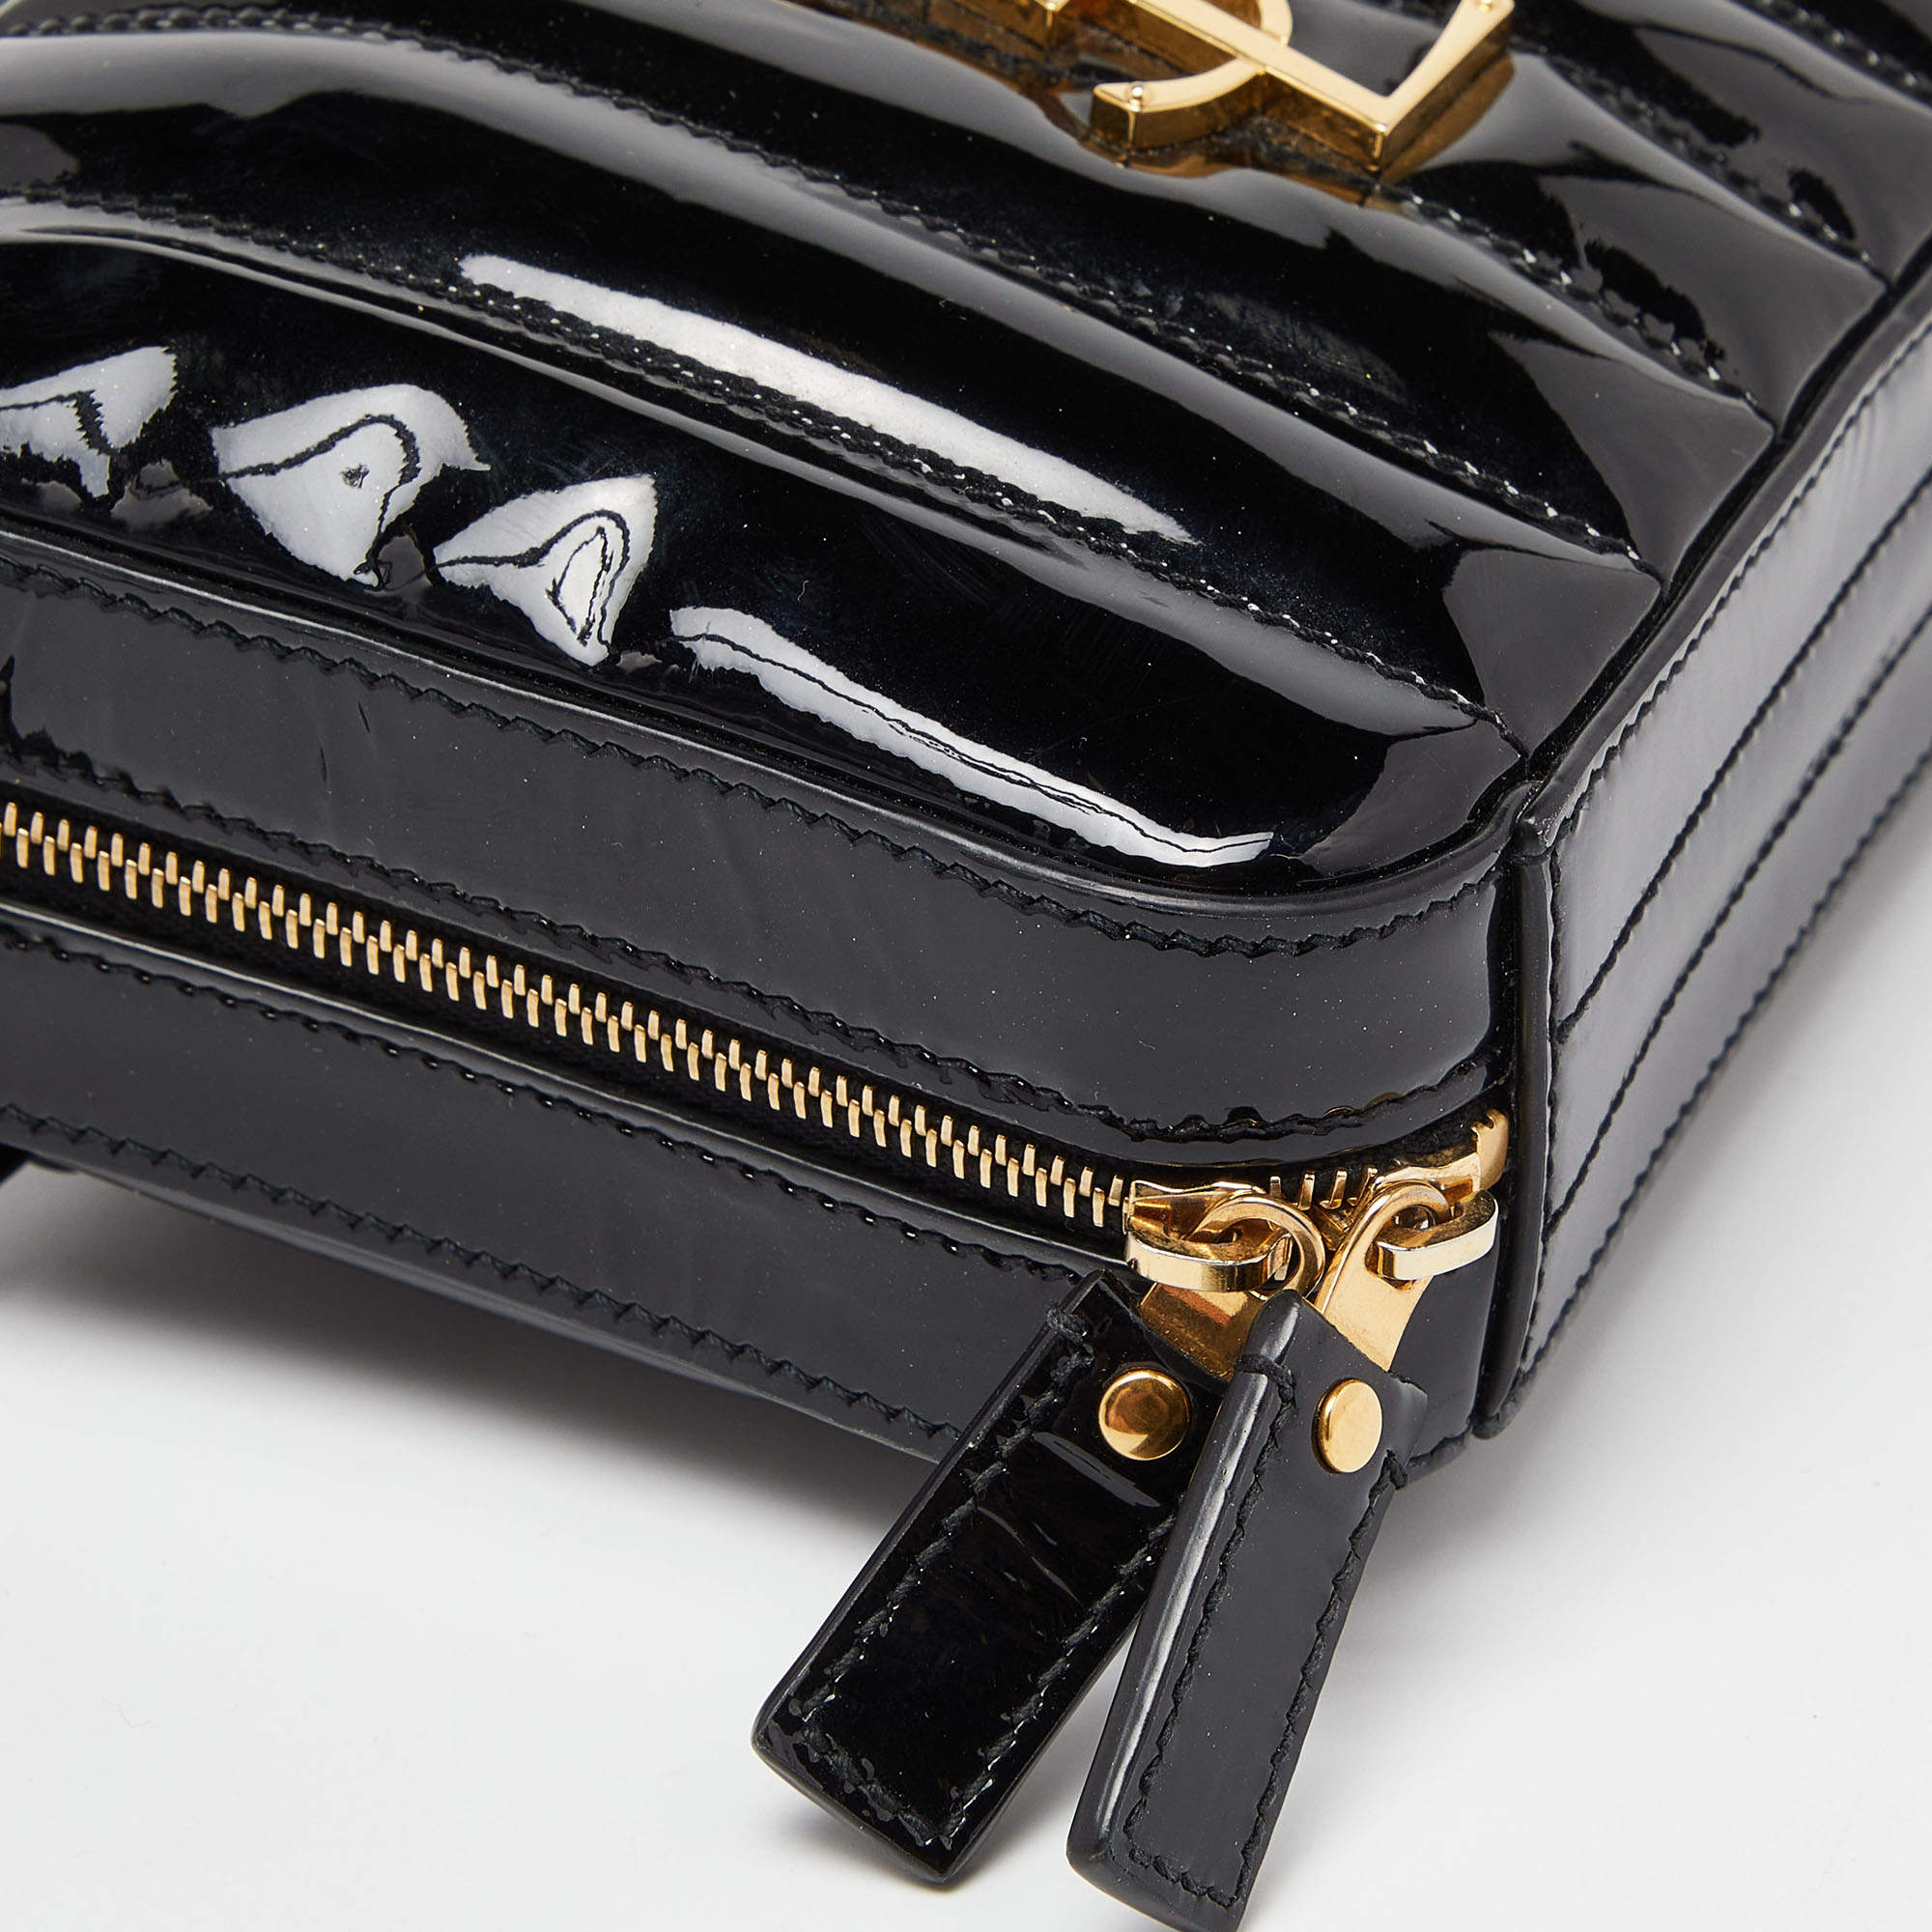 Saint Laurent Paris Black Quilted Leather Vicky Belt Bag Saint